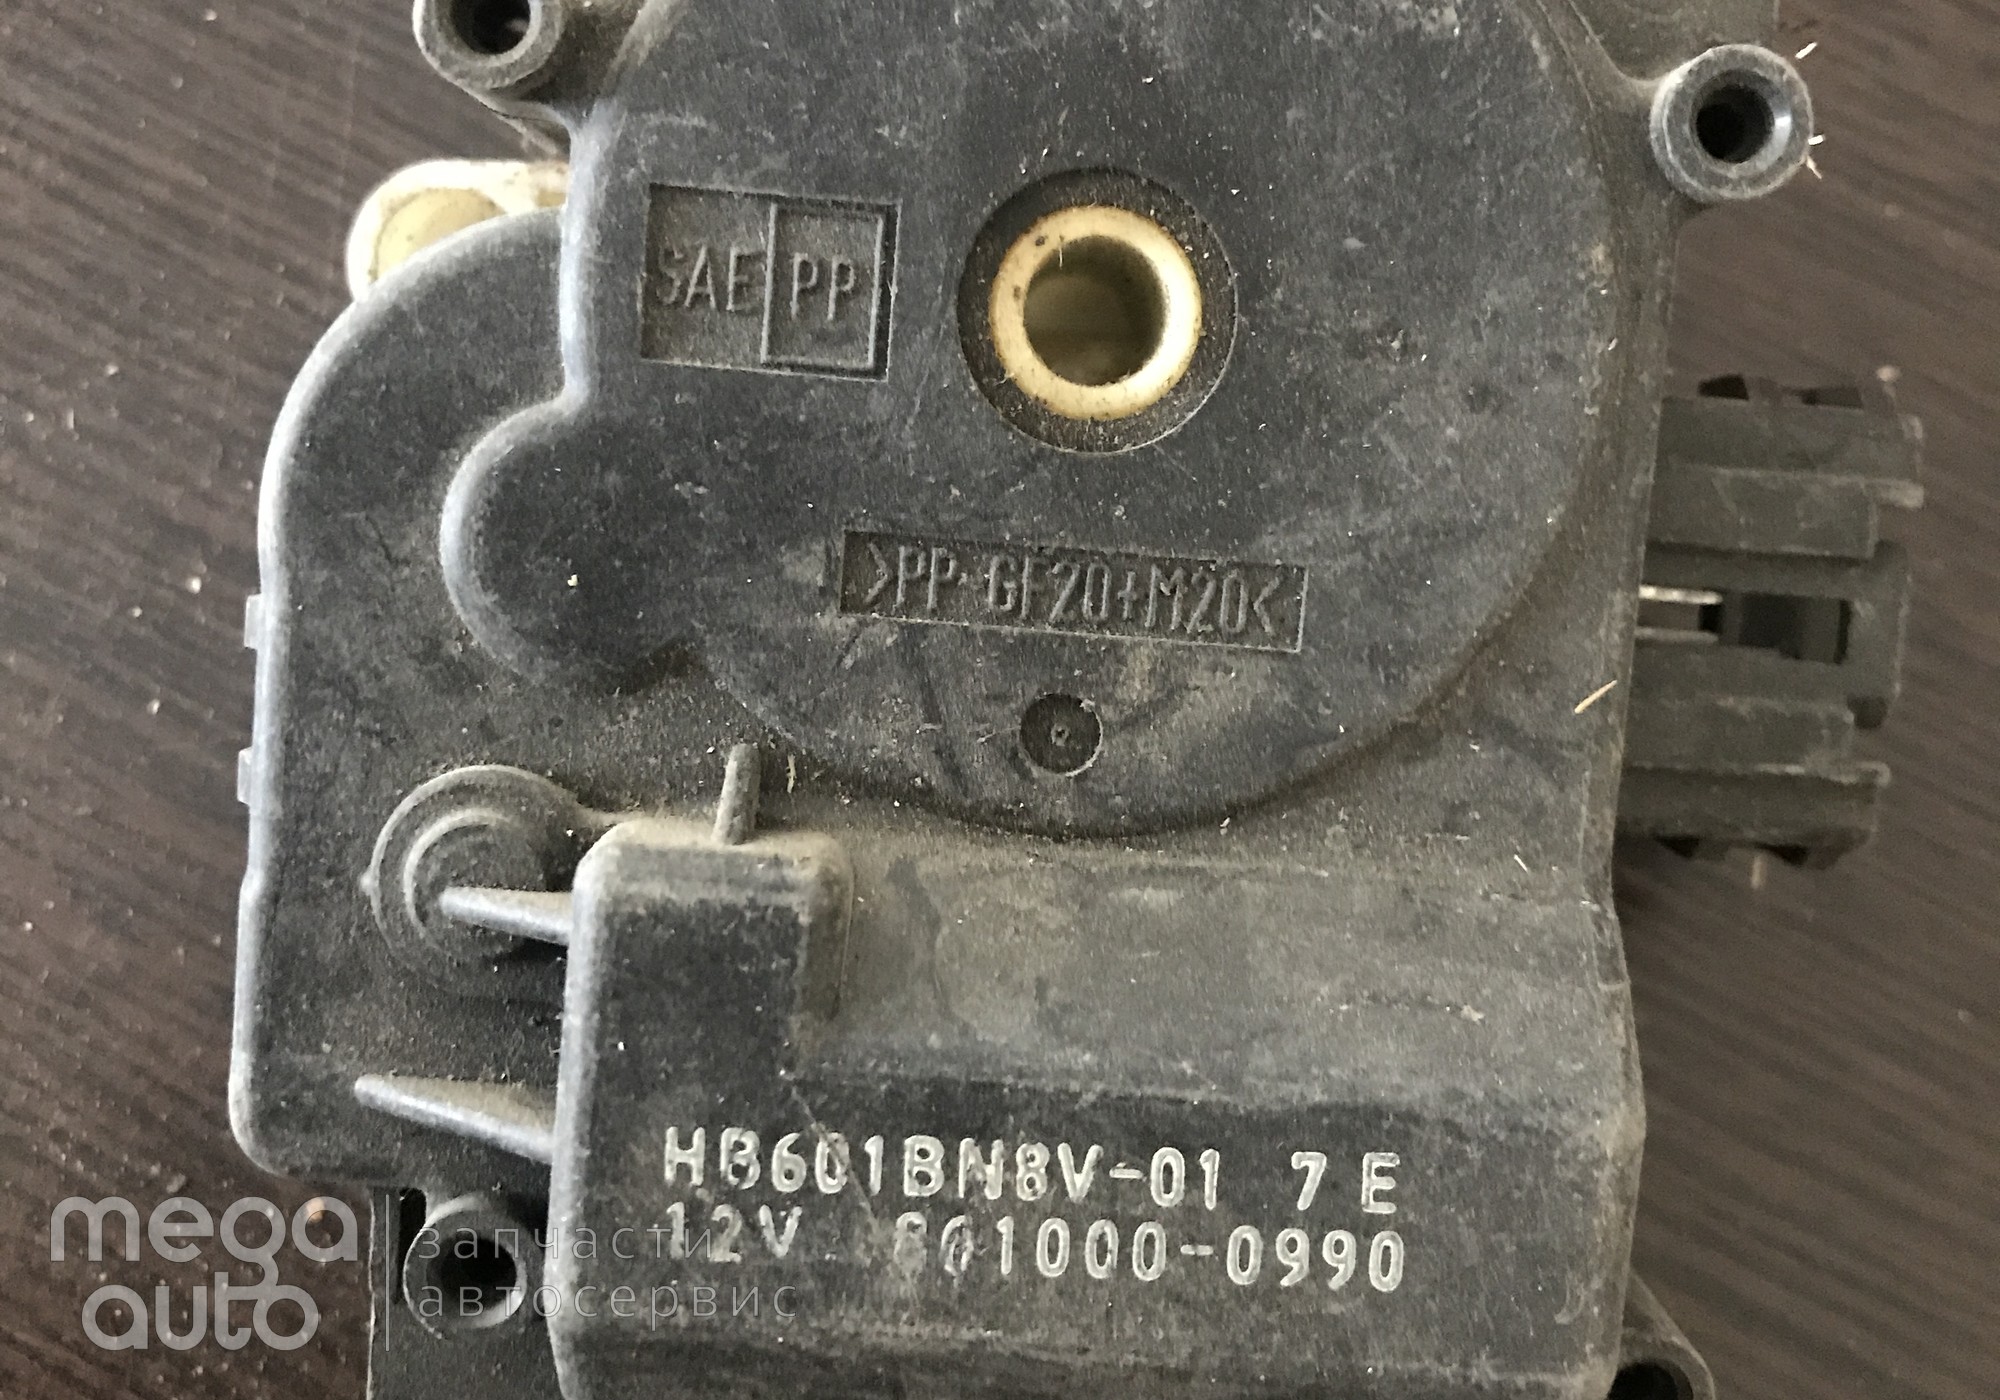 8610000990 Моторчик отопителя мазда 3, мазда 5 для Mazda 3 I (с 2003 по 2009)